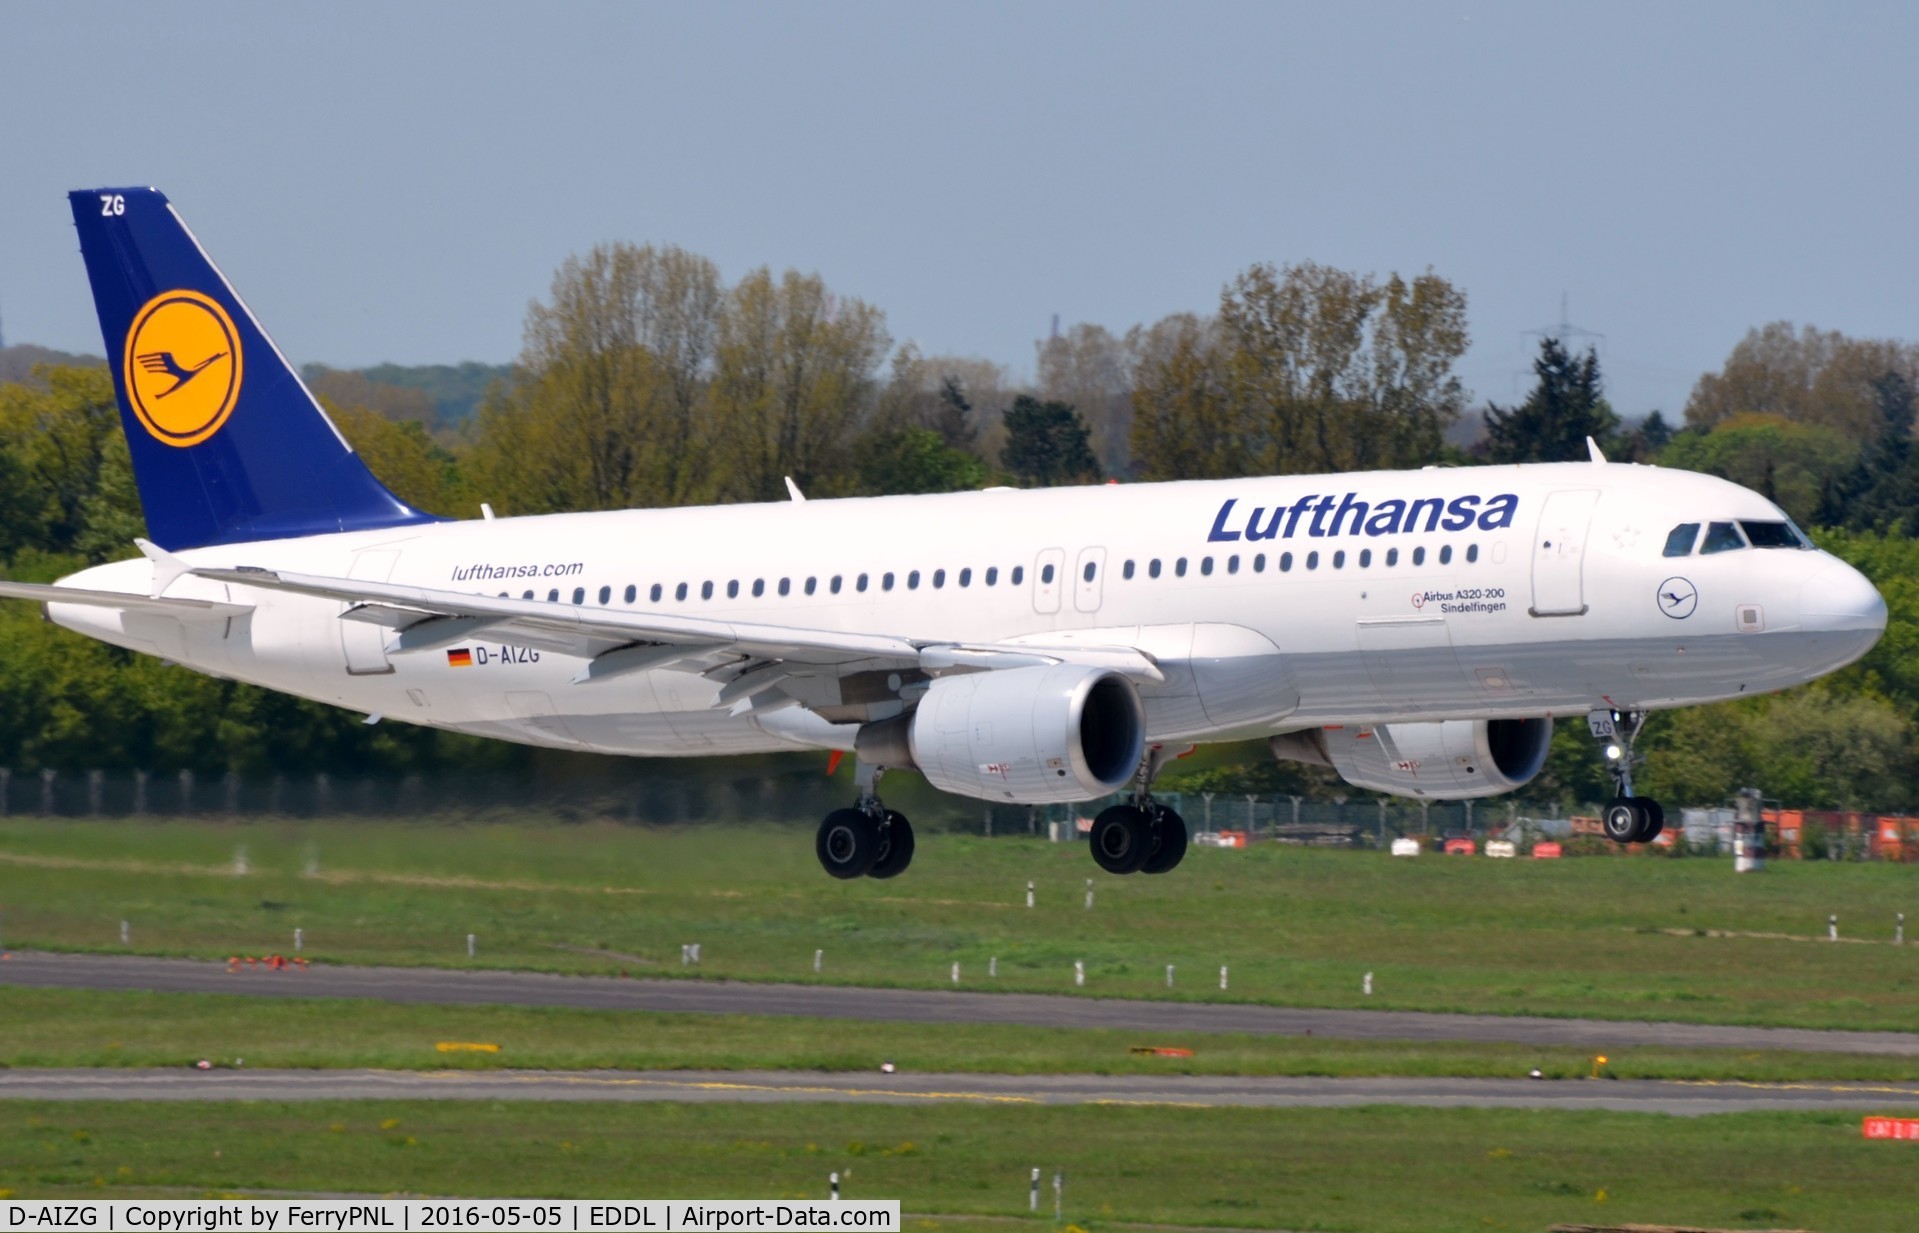 D-AIZG, 2010 Airbus A320-214 C/N 4324, Lufthansa A320 landing in DUS